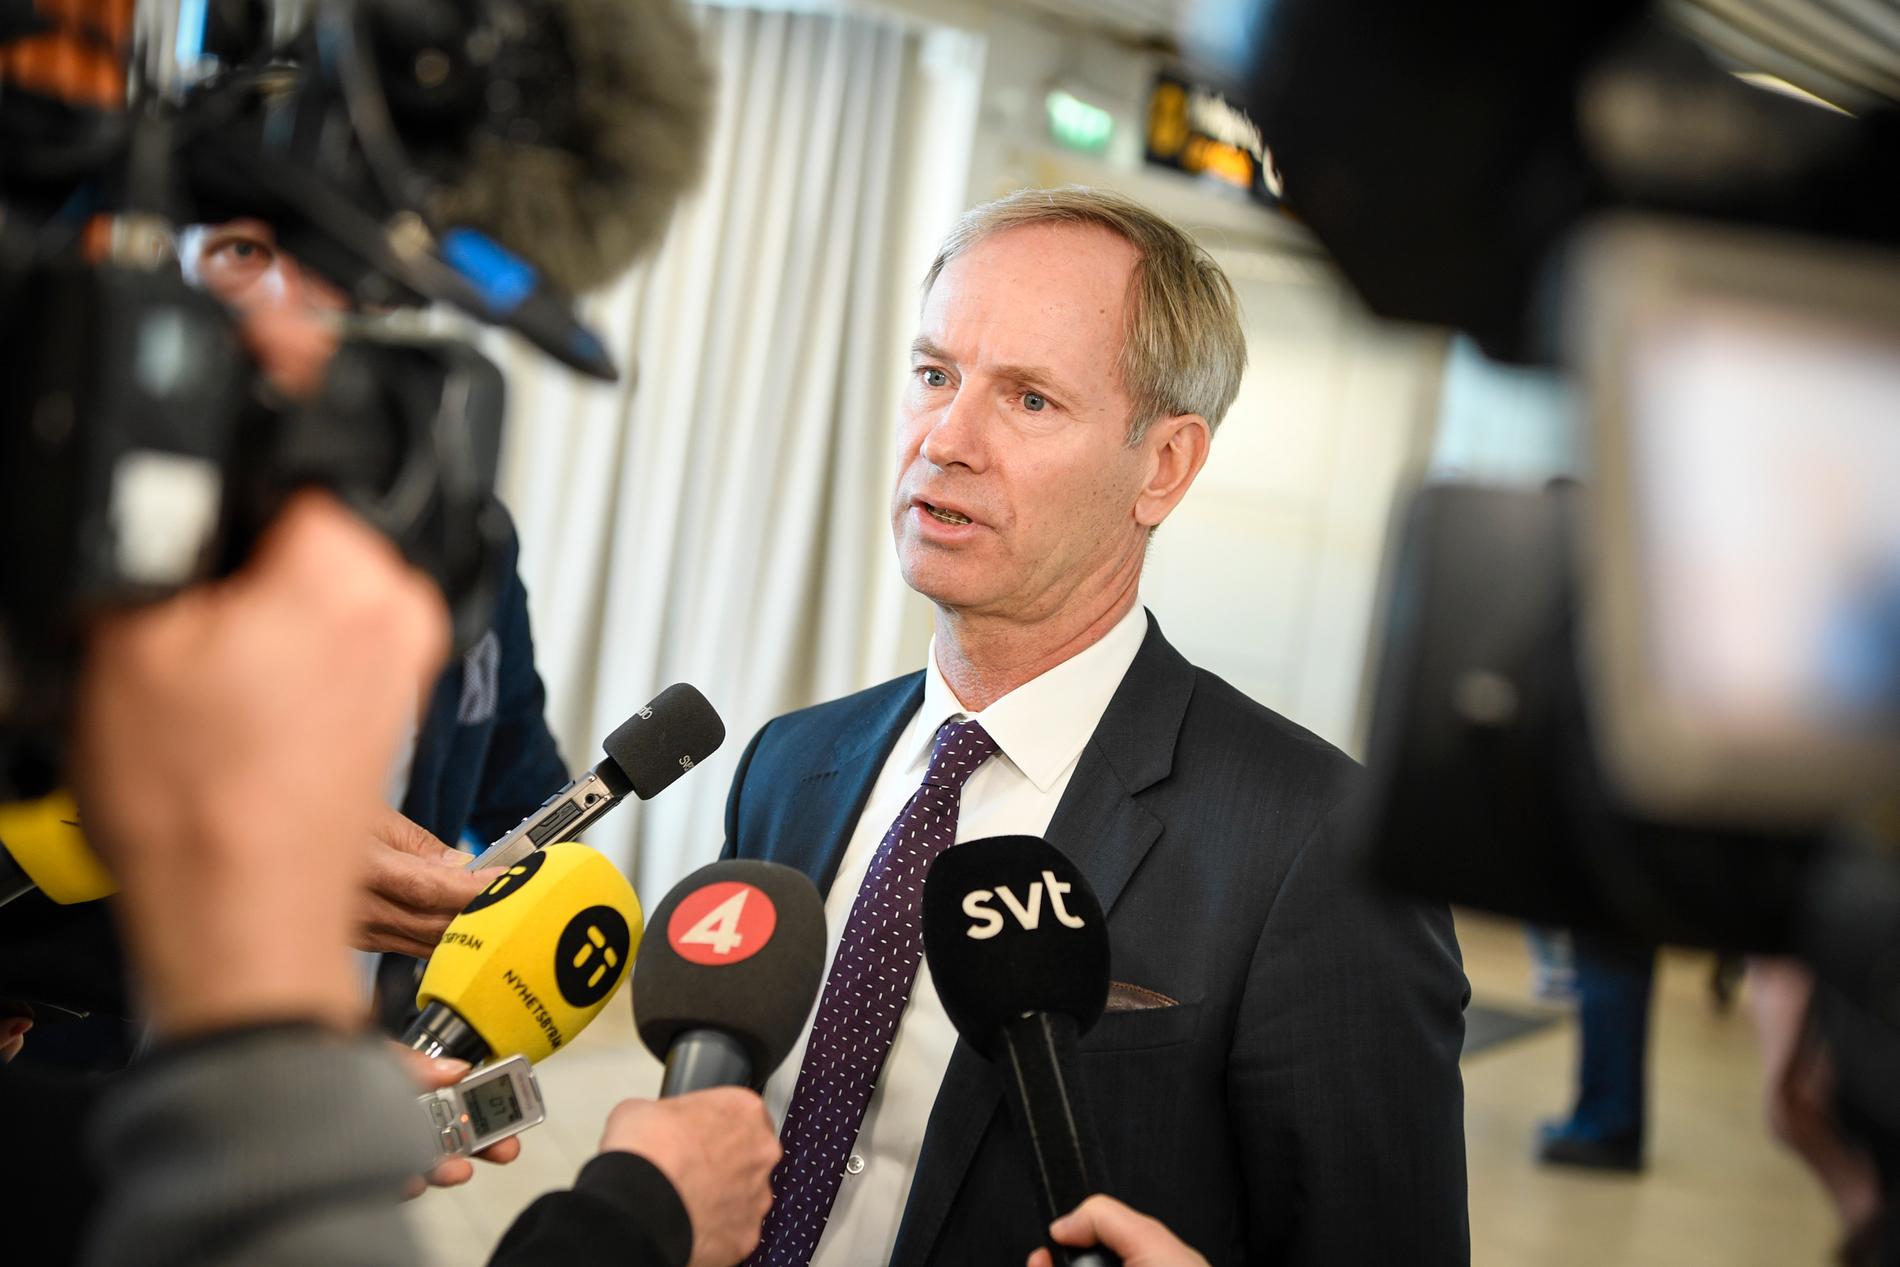 Sveriges FN-ambassadör Olof Skoog håller en pressträff på Sturup flygplats efter säkerhetsrådets möte på Dag Hammarskjölds Backåkra i Skåne i helgen.